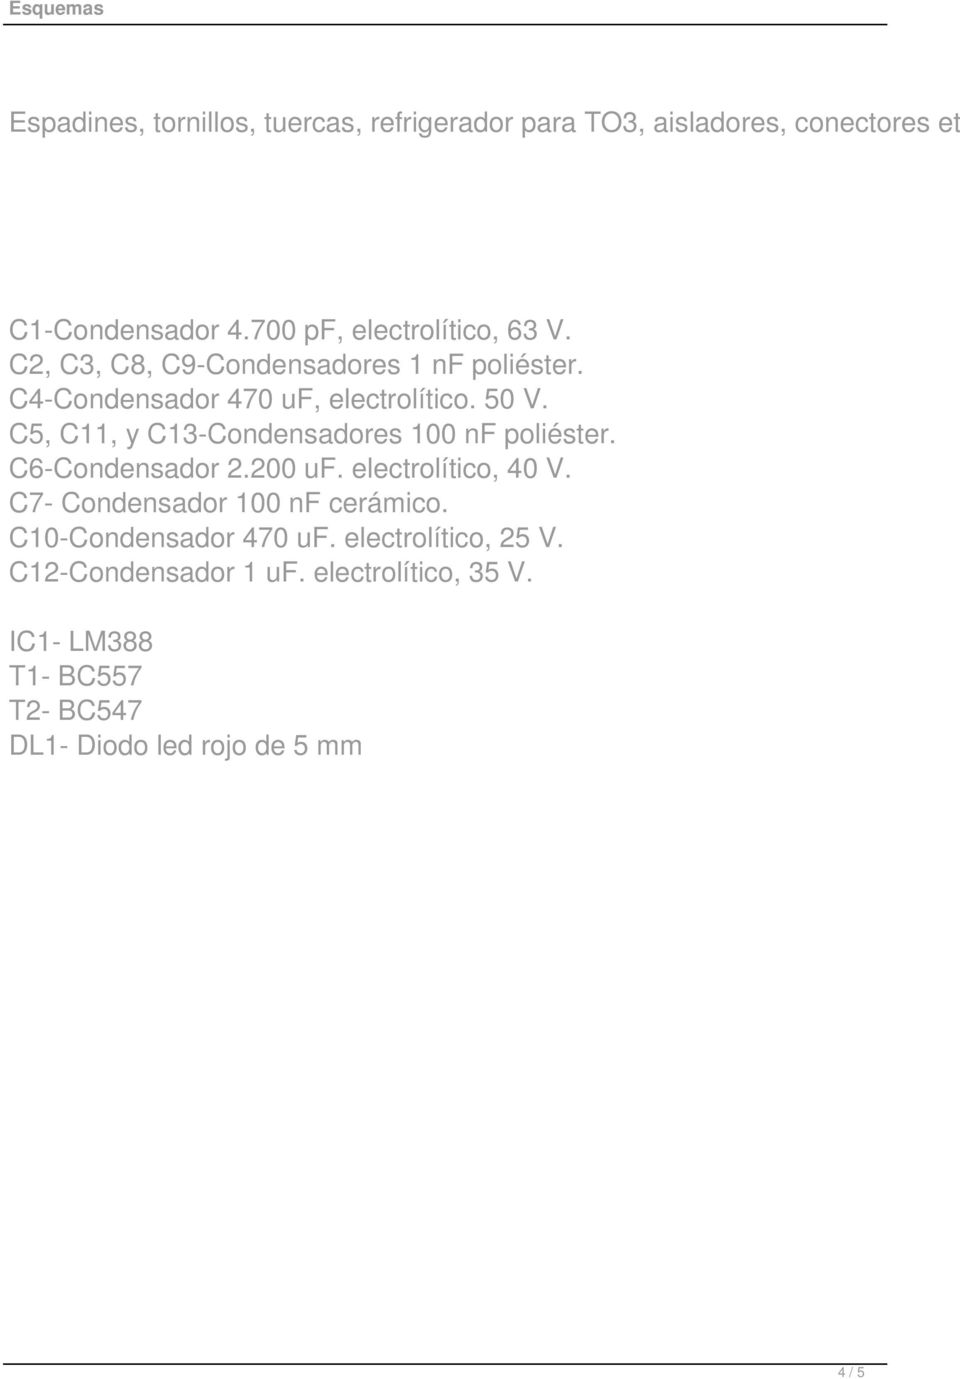 C5, C11, y C13-Condensadores 100 nf poliéster. C6-Condensador 2.200 uf. electrolítico, 40 V.